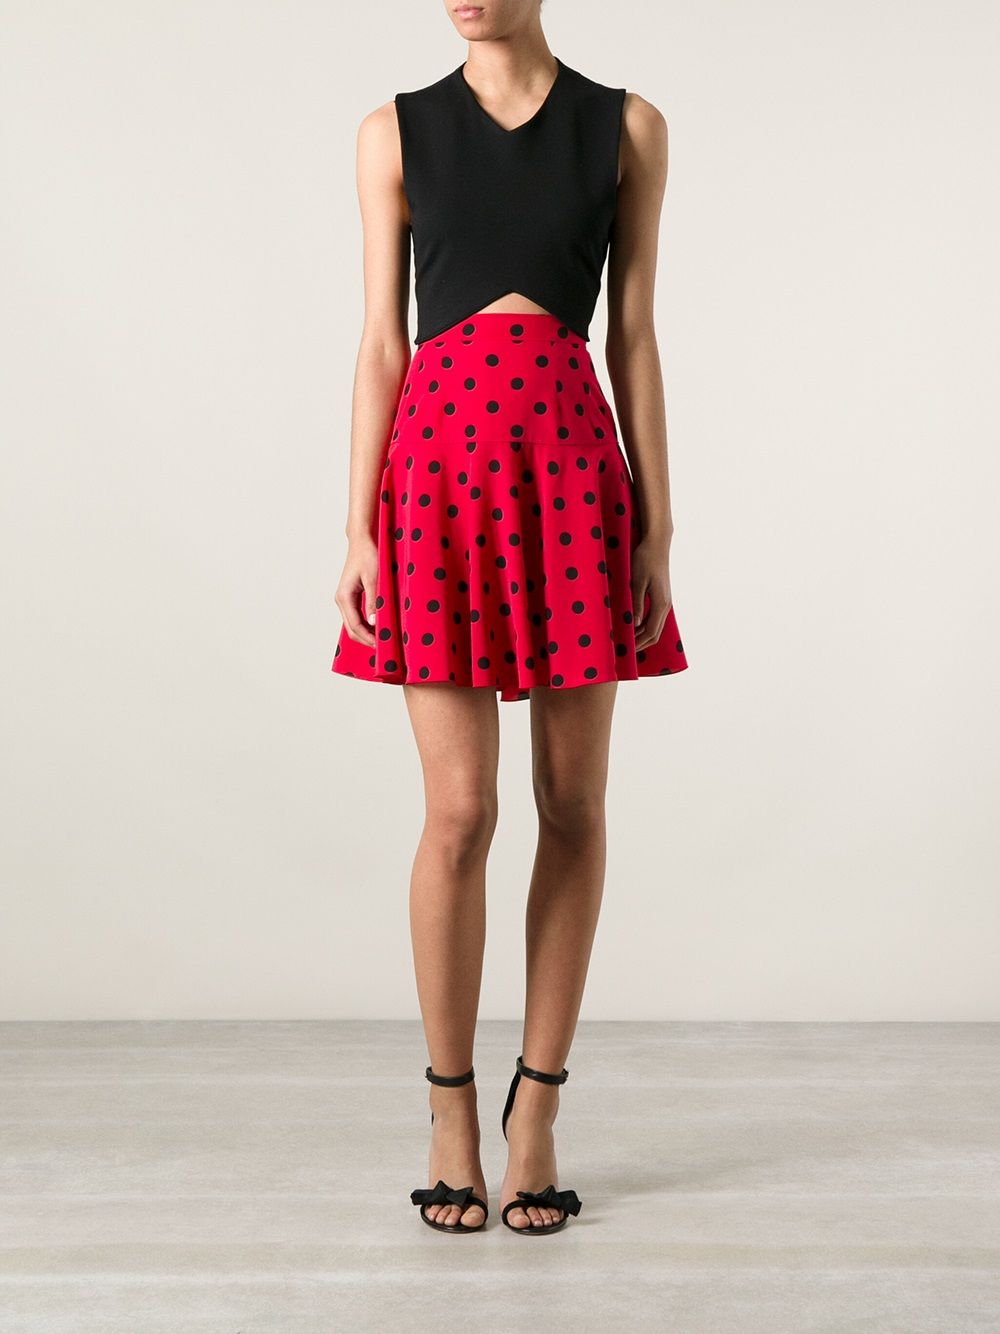 Dolce & Gabbana Polka Dot Flared Skirt - Lyst